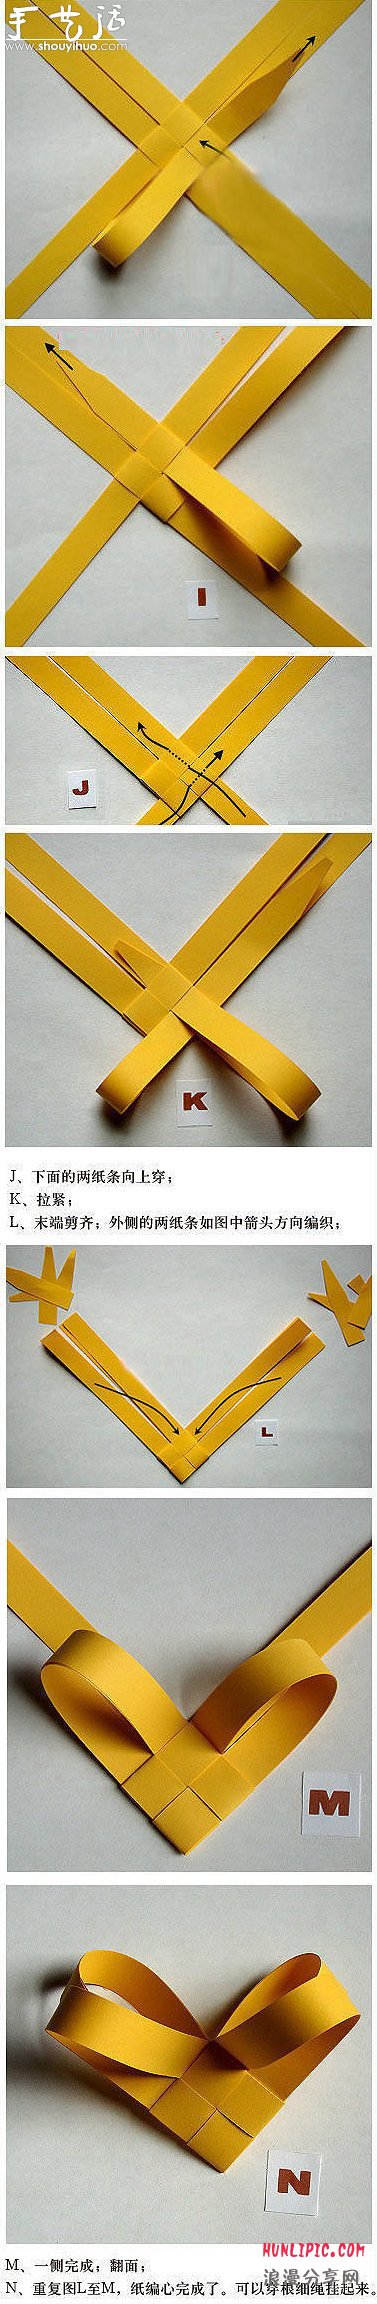 漂亮立体的心形折纸图解教程 -  www.shouyihuo.com